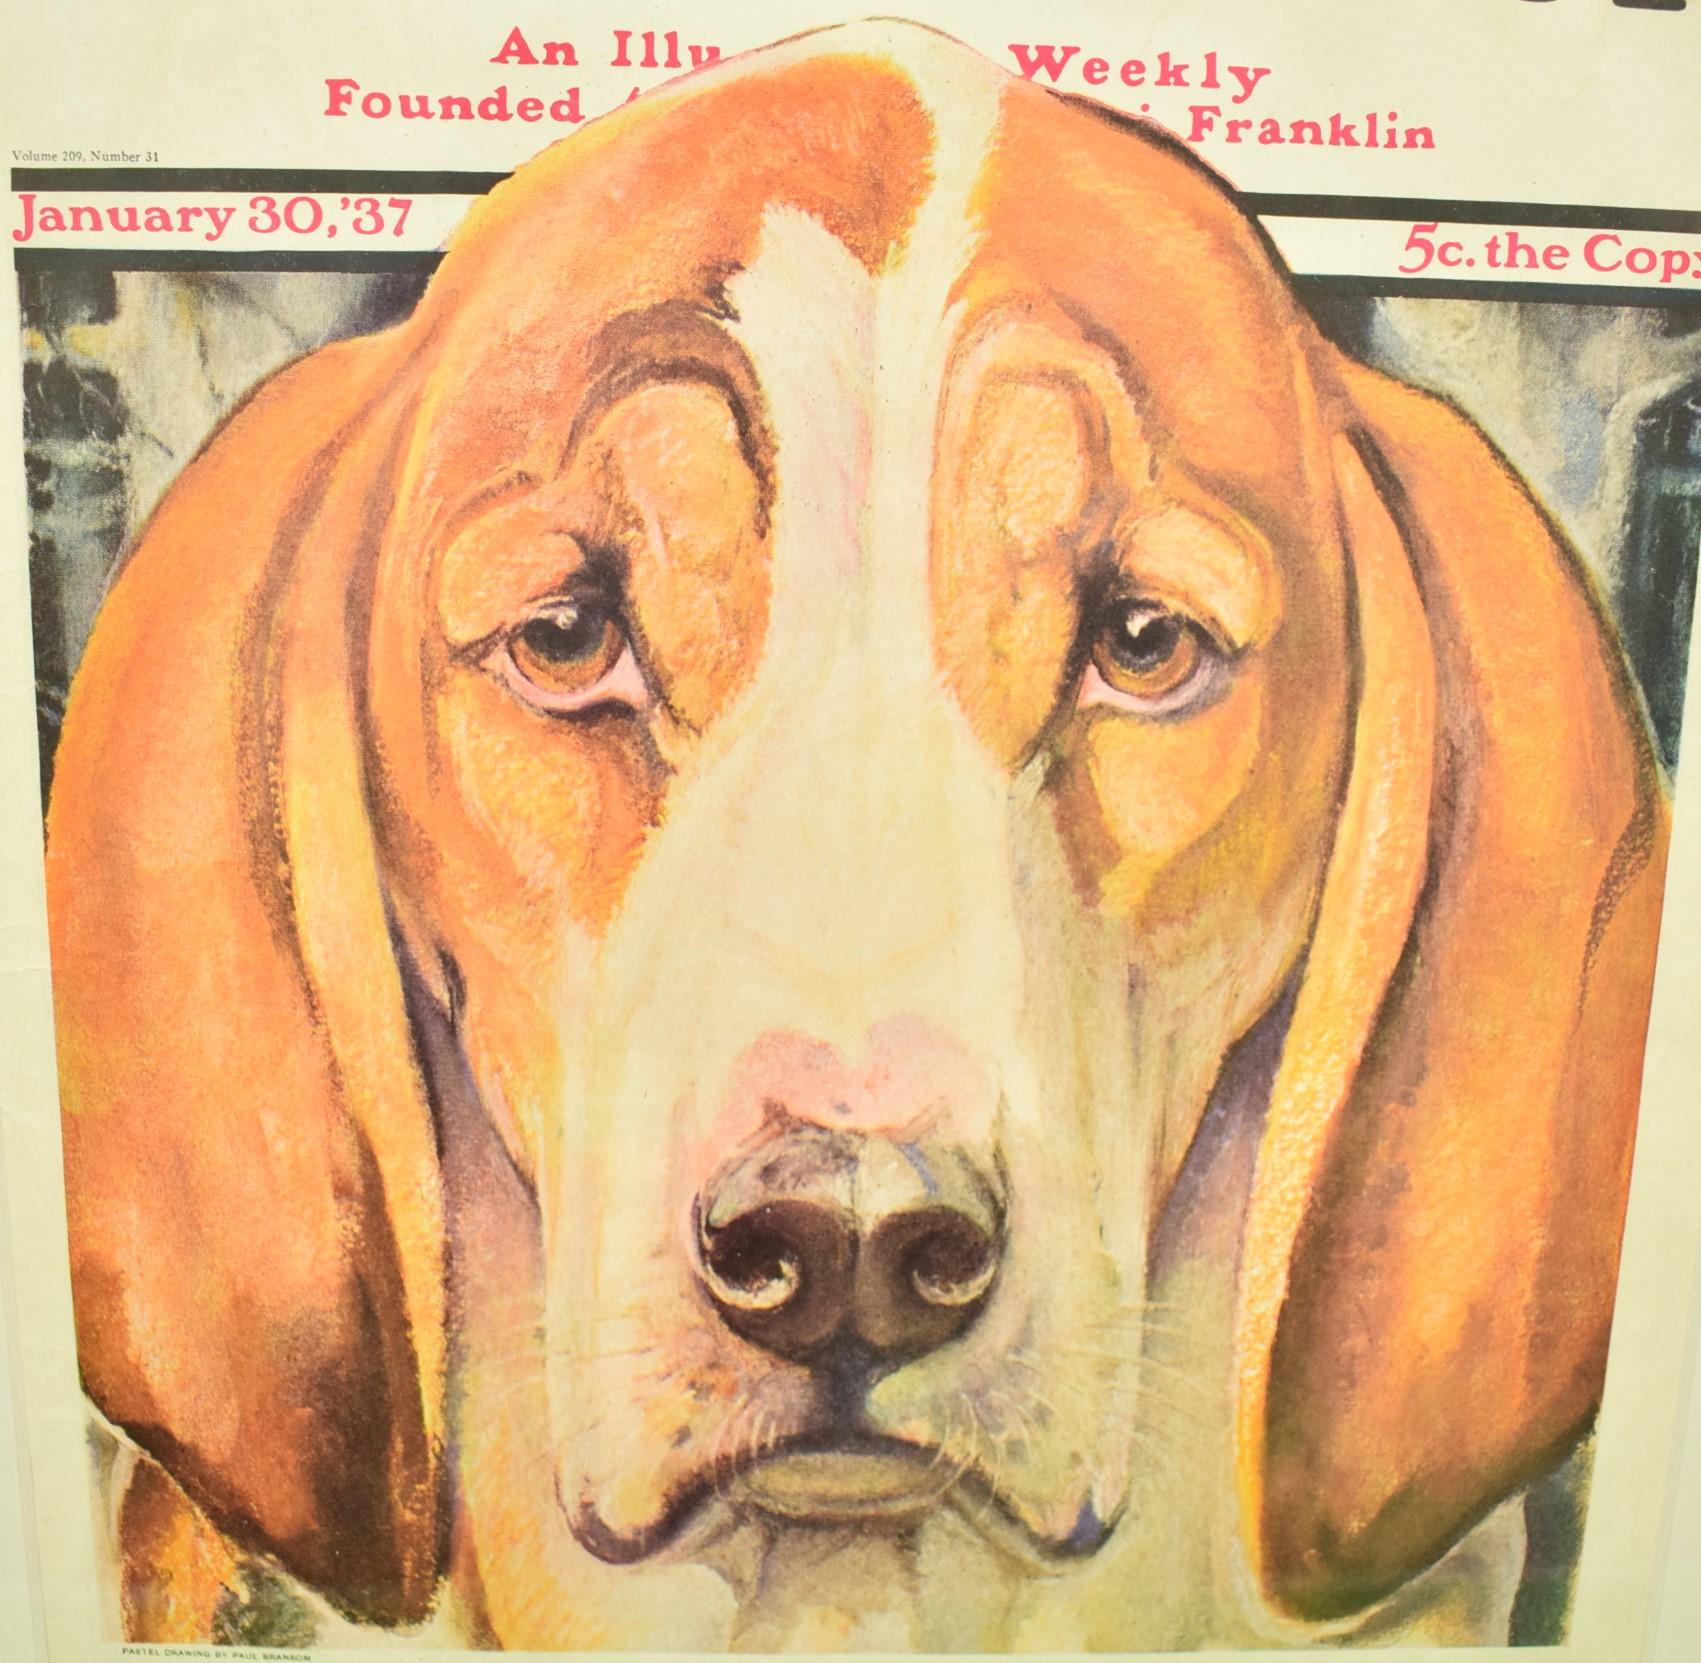 fox and hound magazine